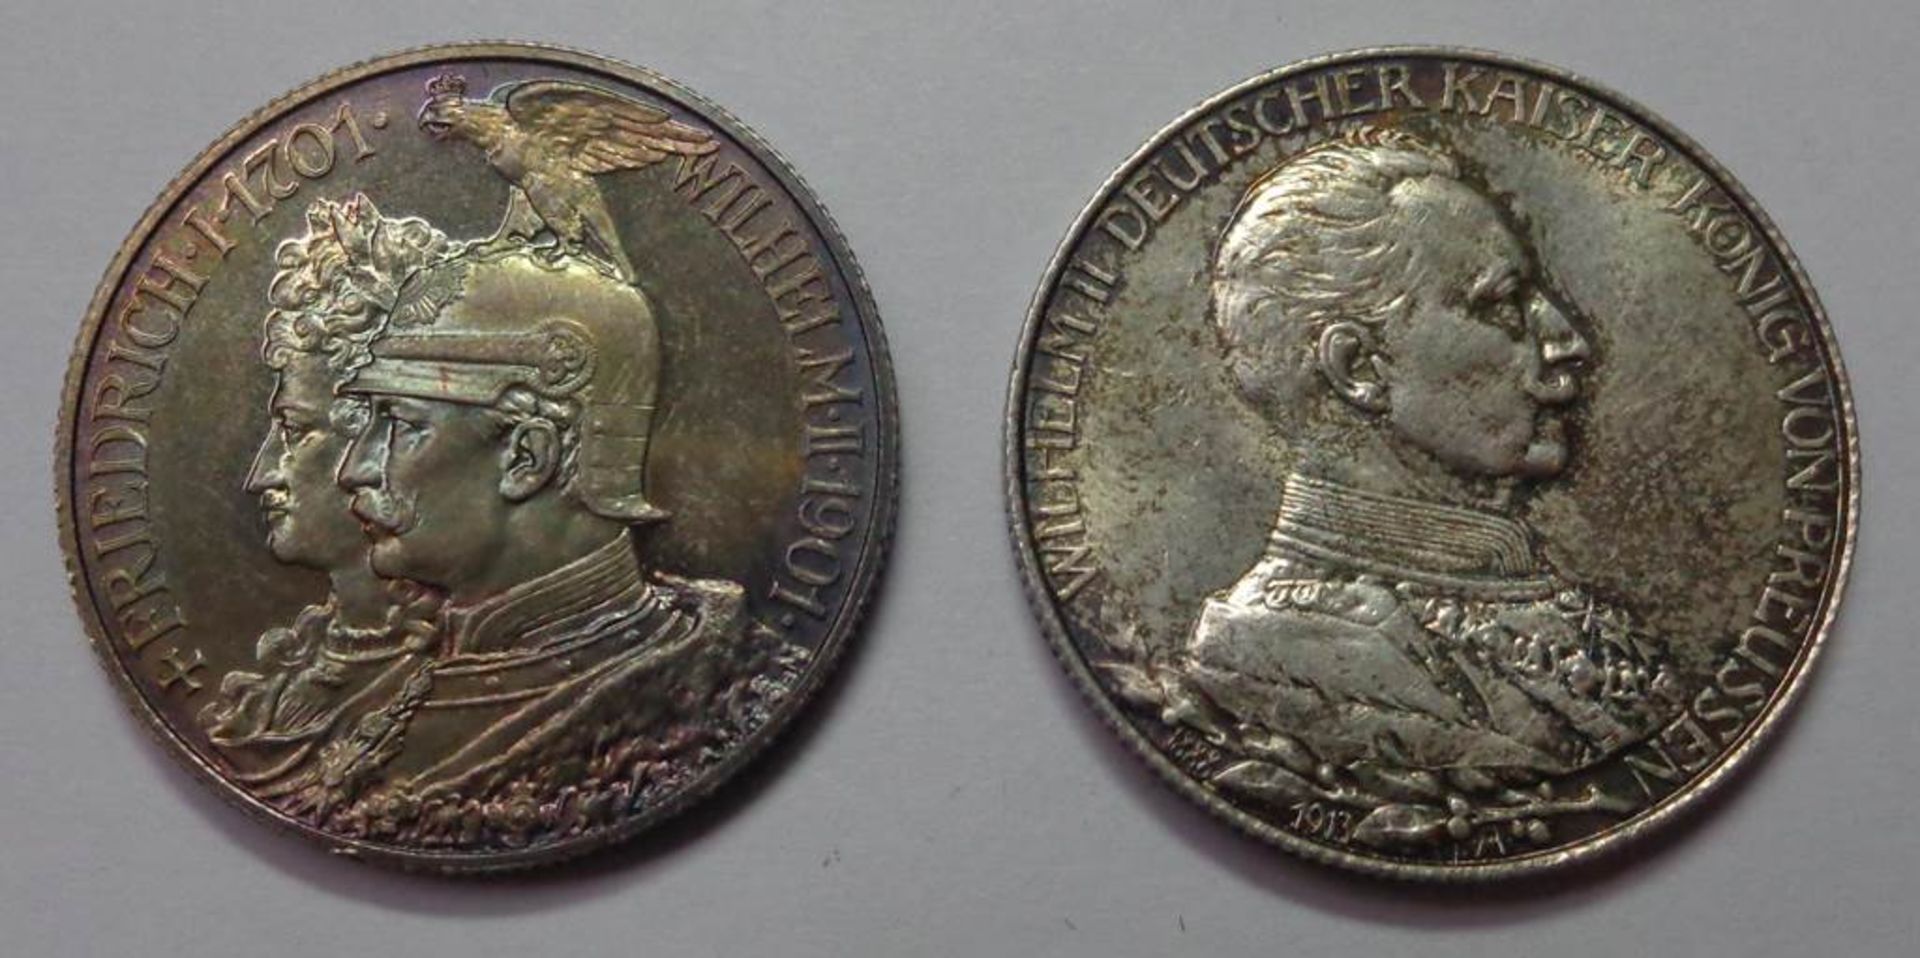 2x Zwei Mark, Deutsches Reich 1901 + 1913, vz. - Stgl., zus. 22,21 gr.